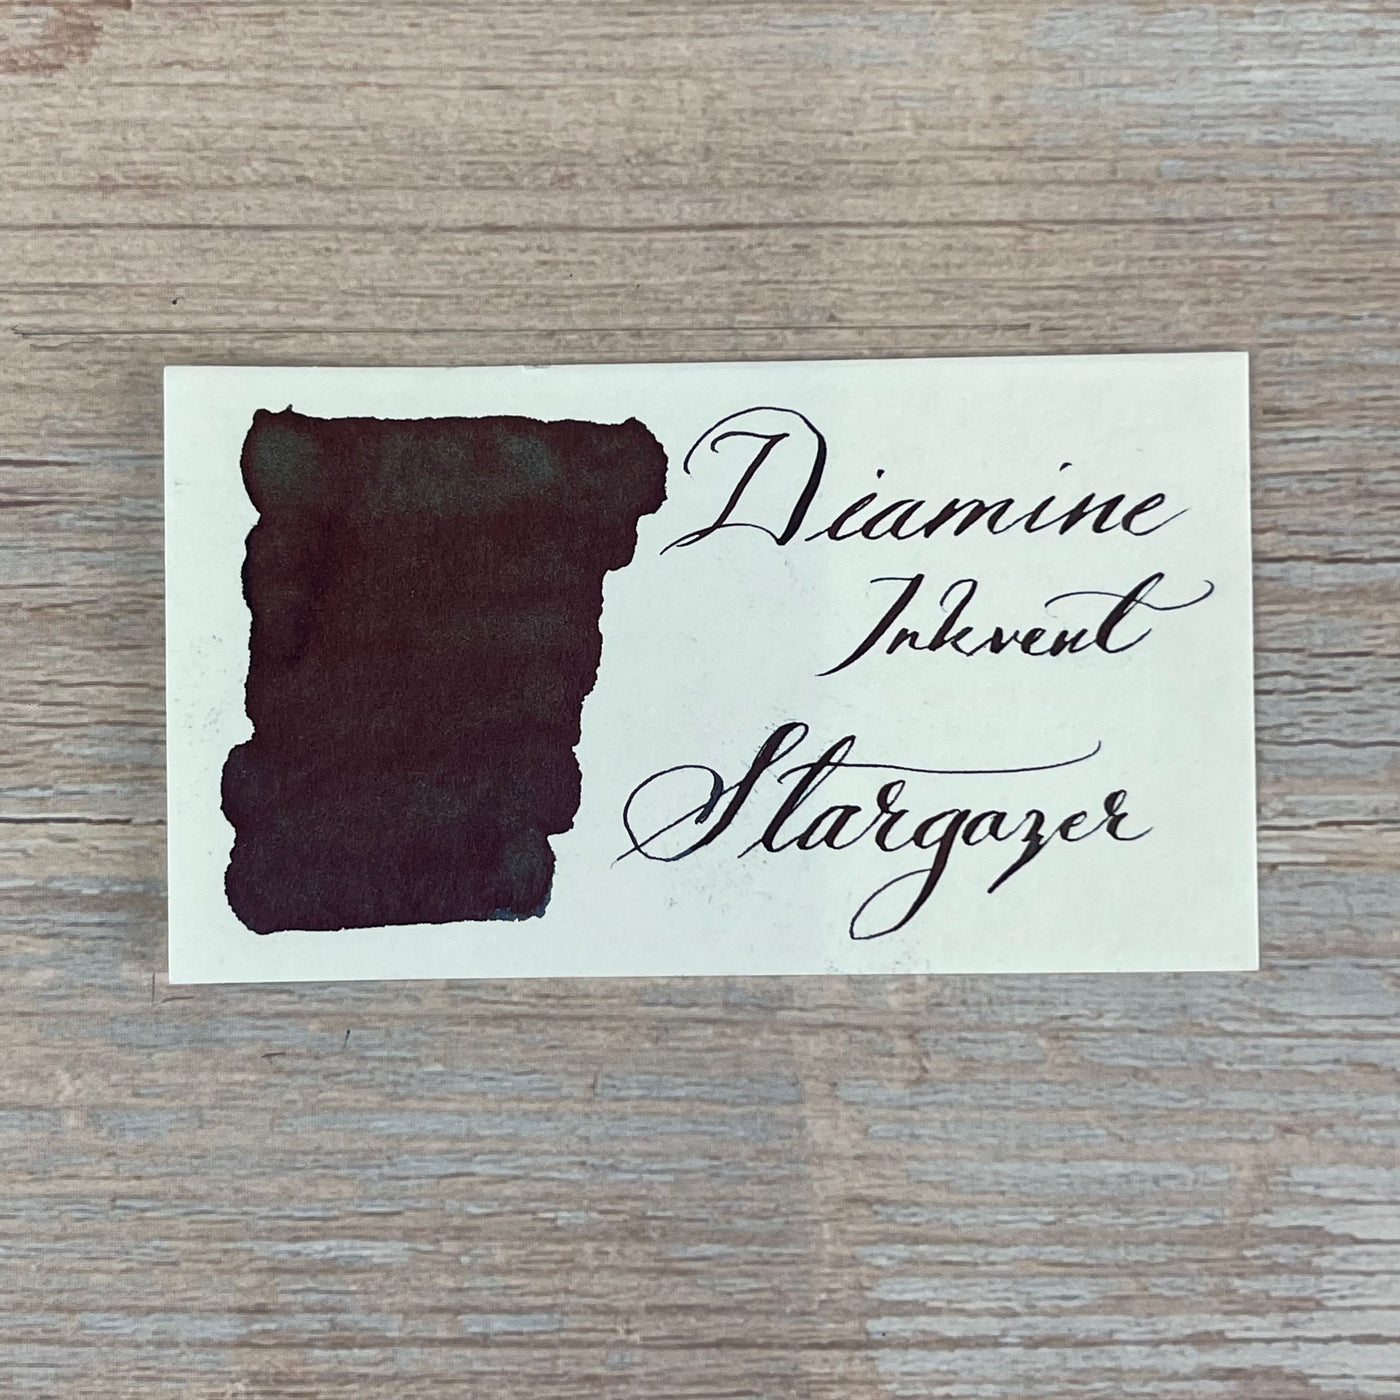 Diamine Inkvent Stargazer - 50ml Bottled Ink